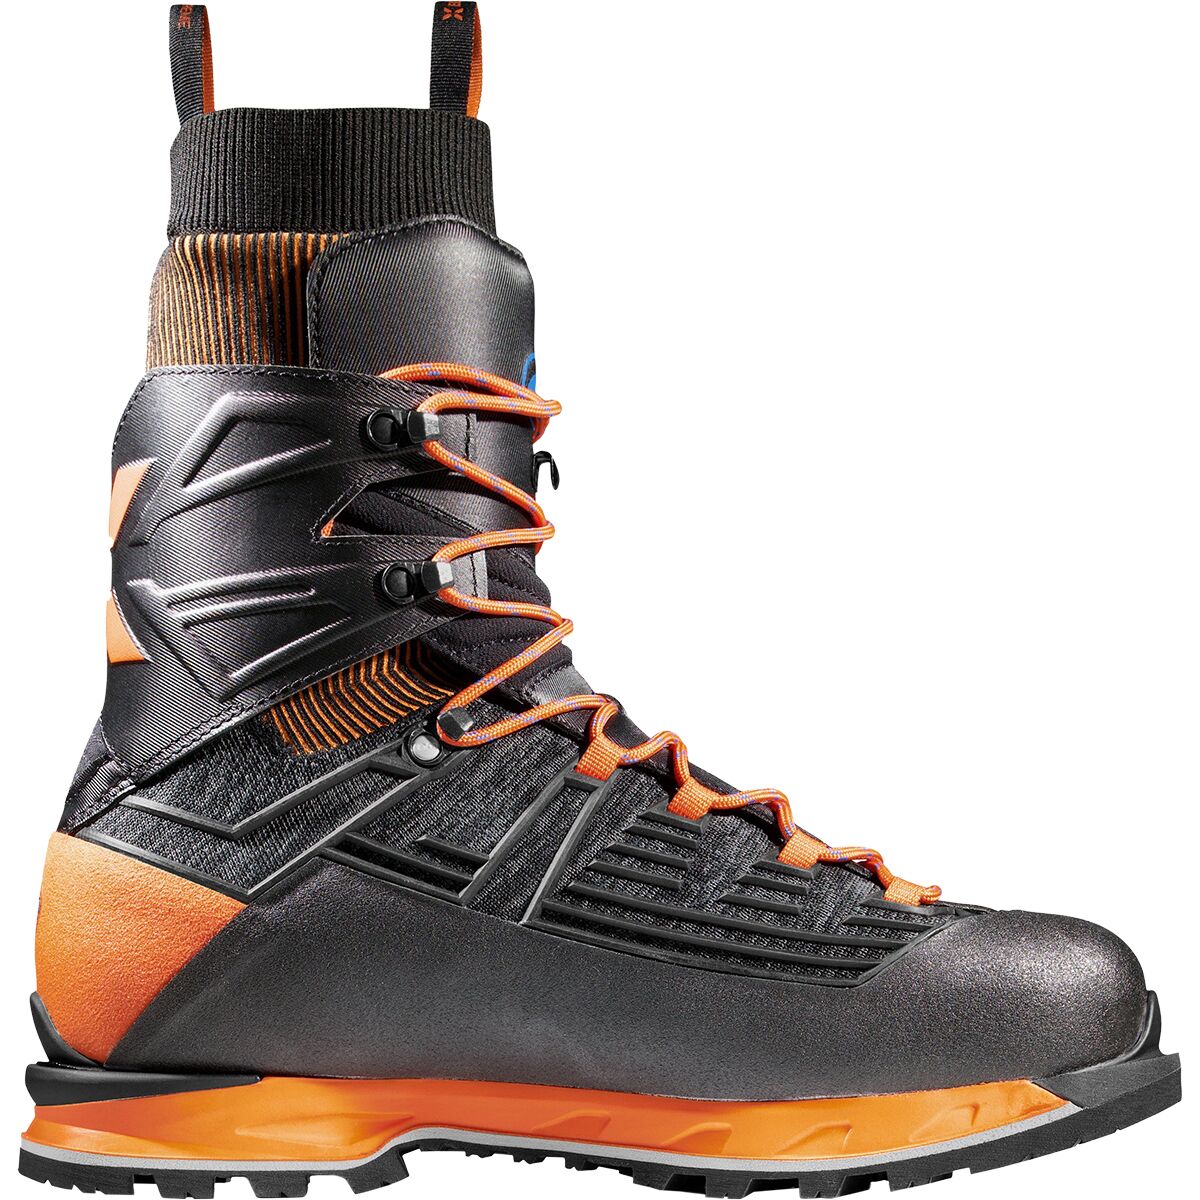 Nordwand Knit High GTX Mountaineering Boot - Women